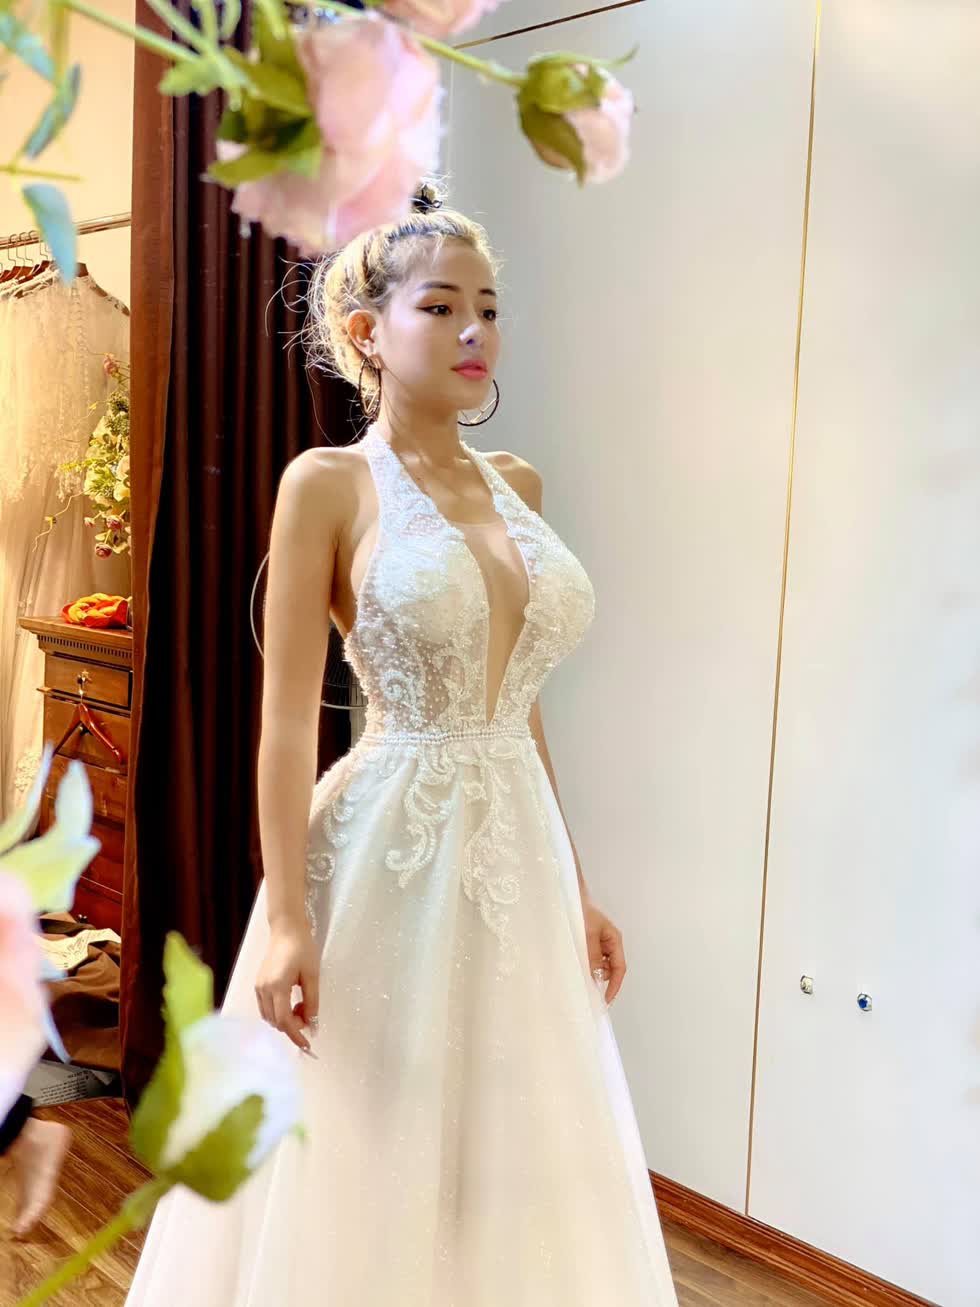 Ngân 98 bất ngờ diện váy cưới gây tò mò cho cộng đồng mạng.